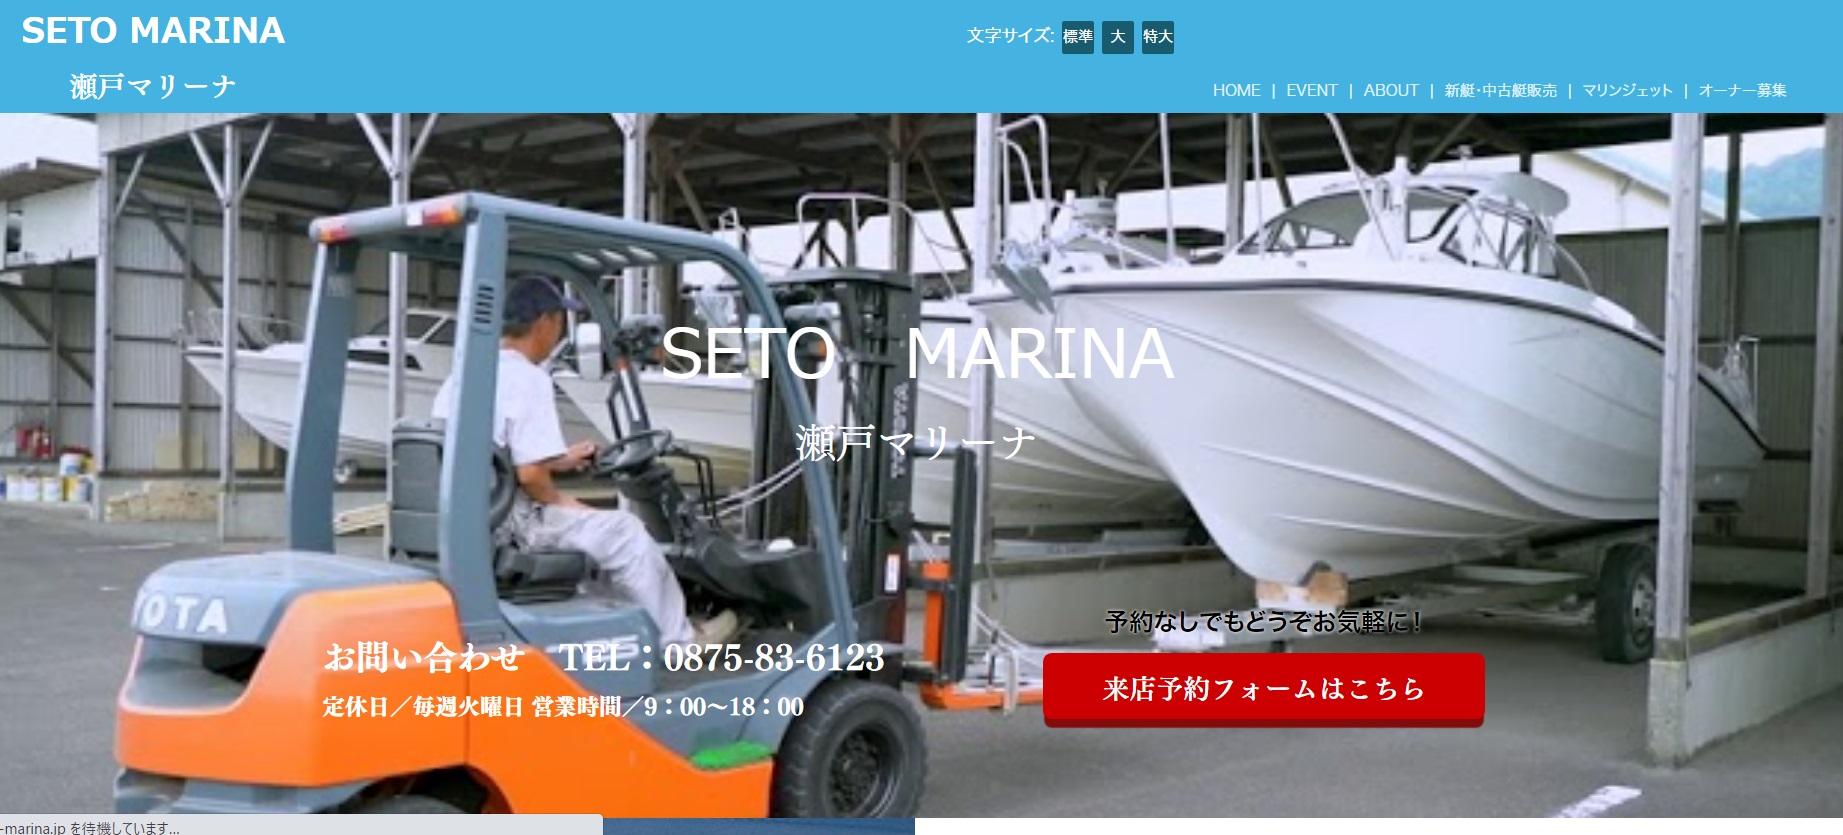 香川マリンで小型船舶免許を取得